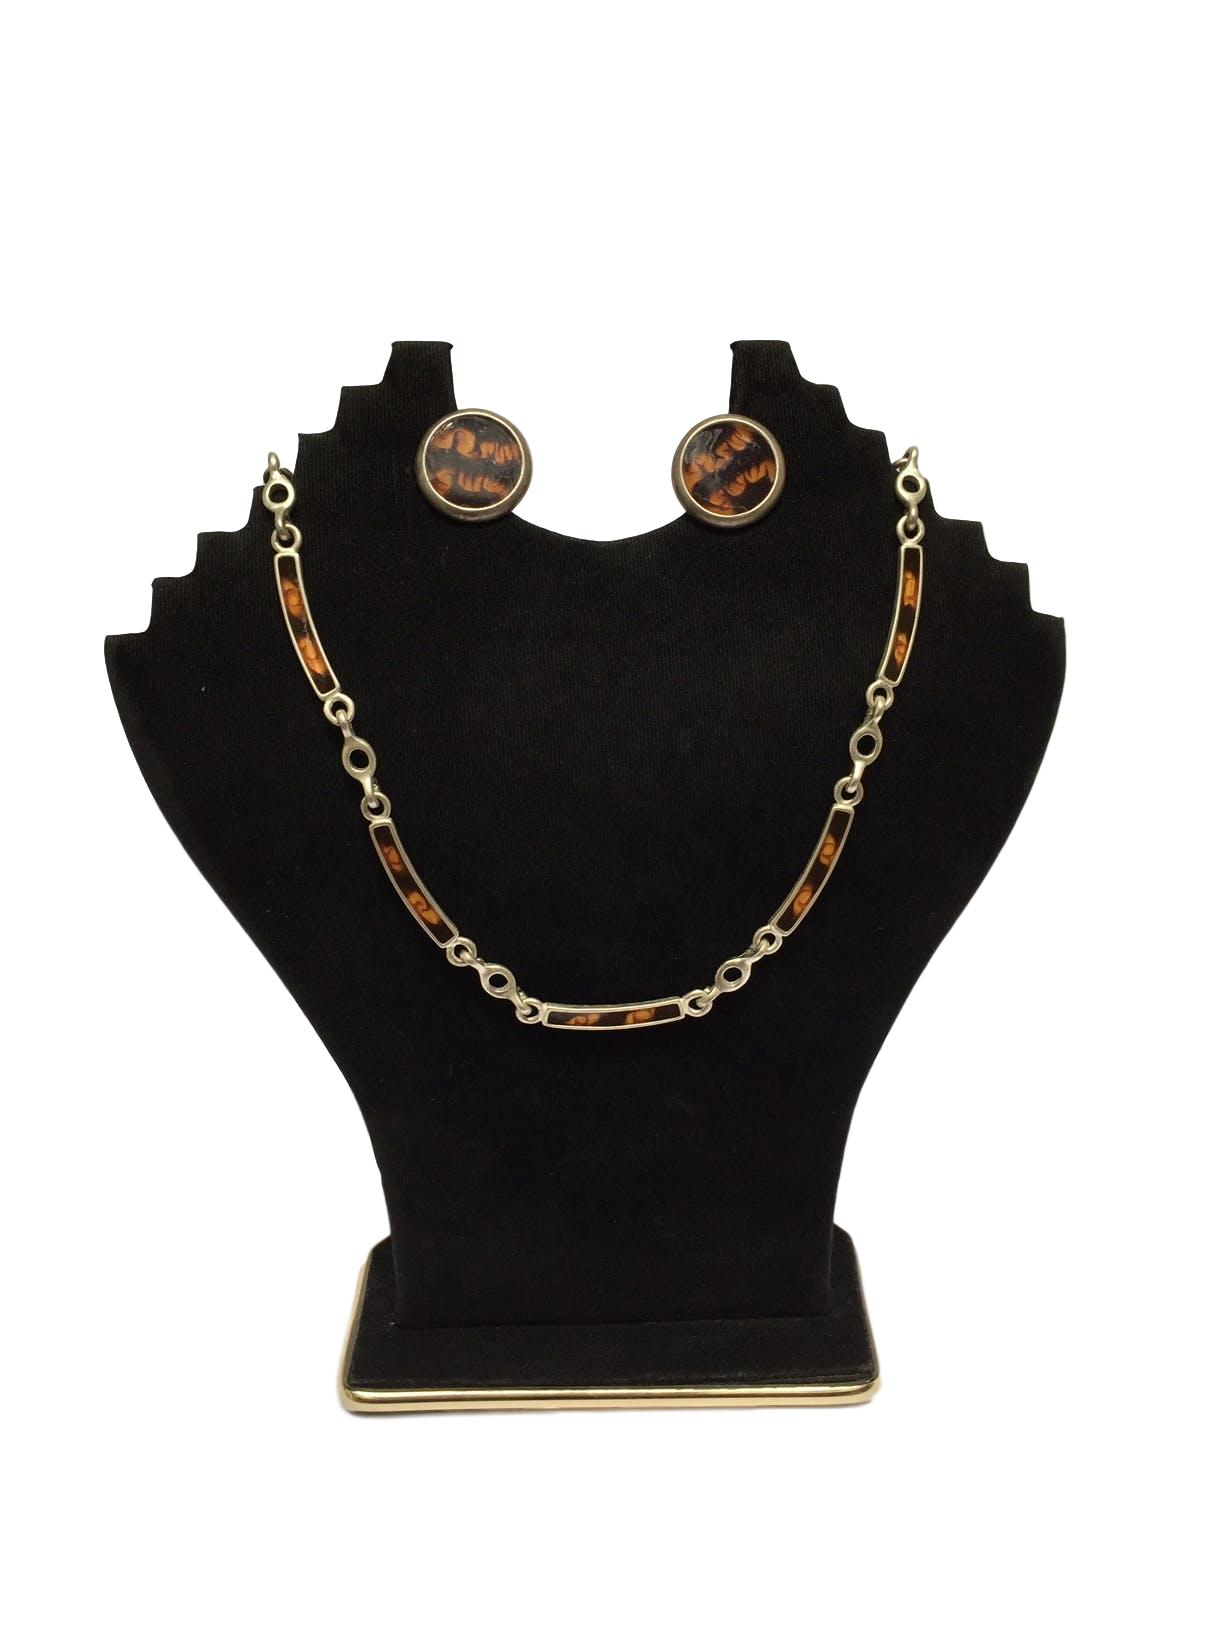 Collar plateado con rectángulos en tonos marrones e intersecciones circulares
Circunferencia: 46 cm